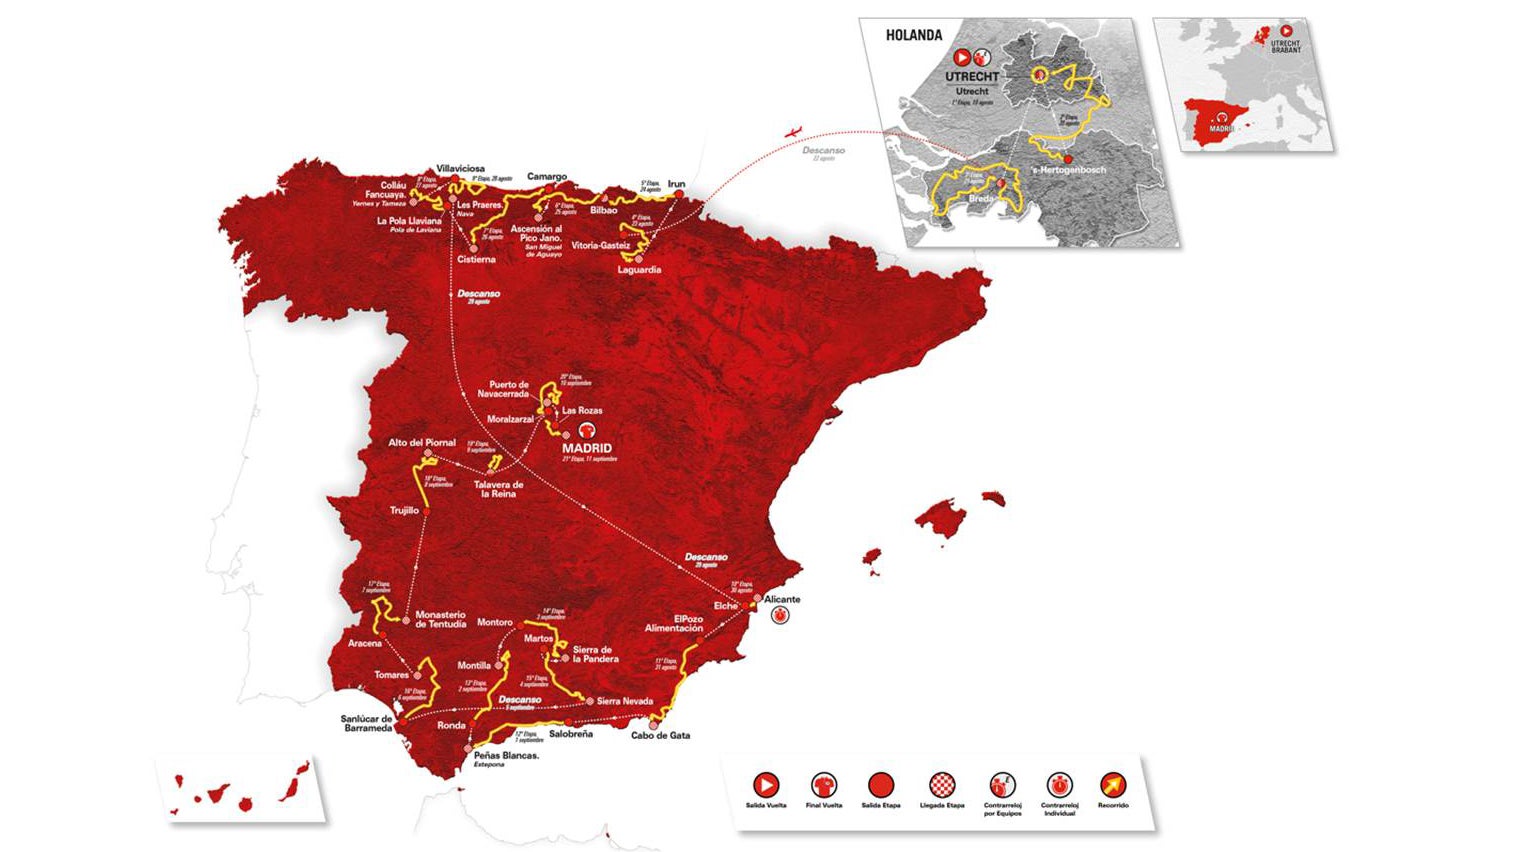 Climb-heavy 2022 Vuelta a España route to start in Holland